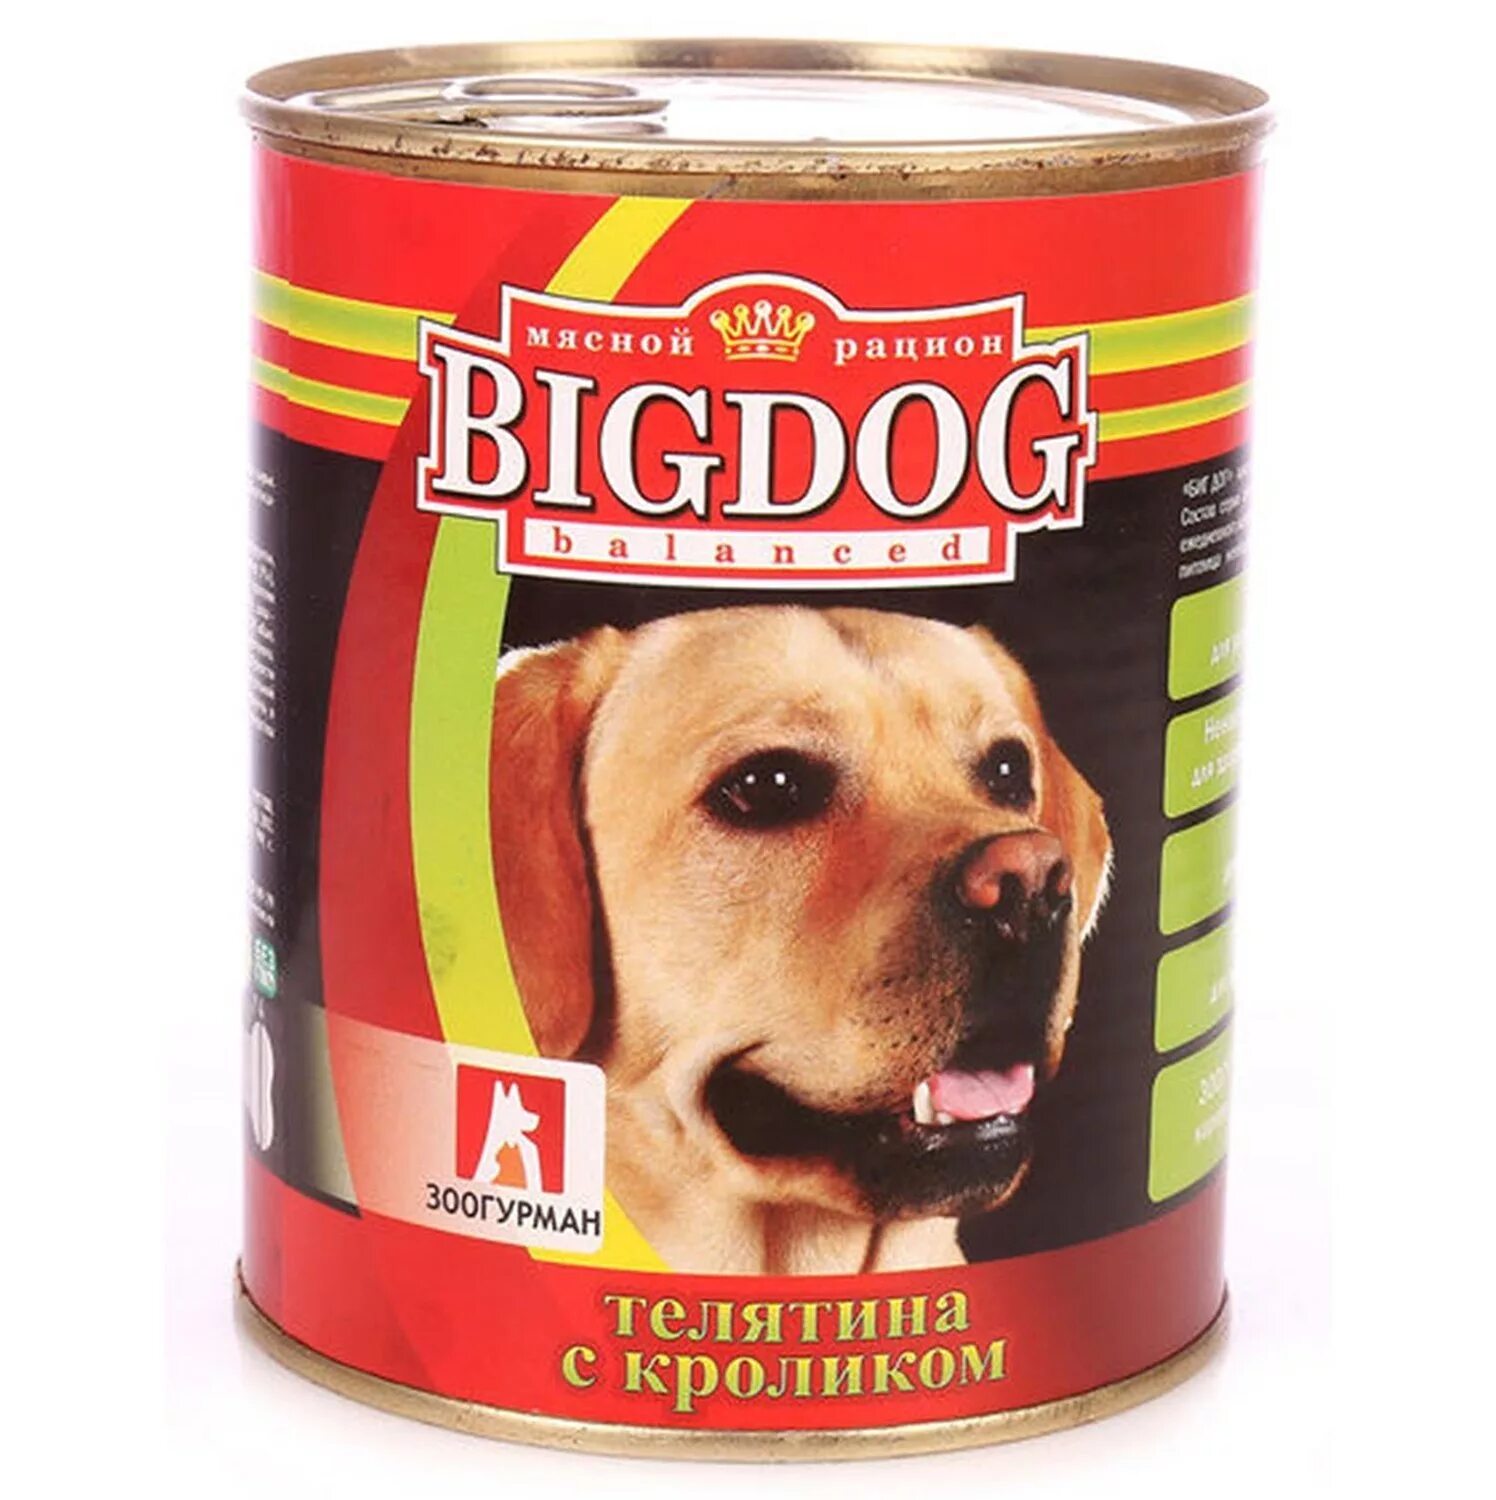 Зоогурман BIGDOG конс д/собак 850г. Биг дог консервы для собак 850 гр. Корм для собак Зоогурман big Dog говядина, рубец 850г. Зоогурман "big Dog" мясное ассорти ж/б 850гр.